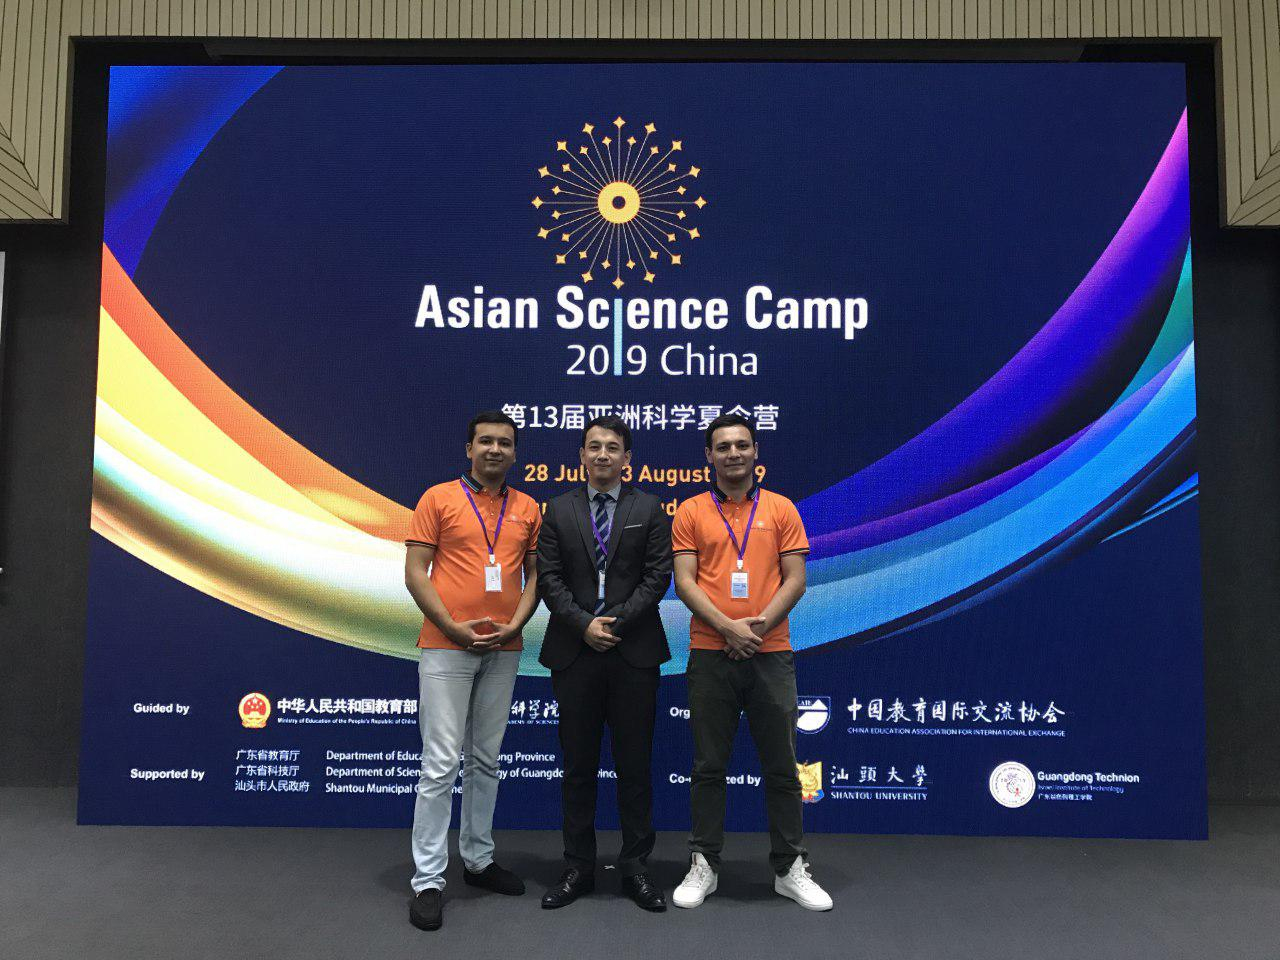   RoboCup      Asian Science Camp